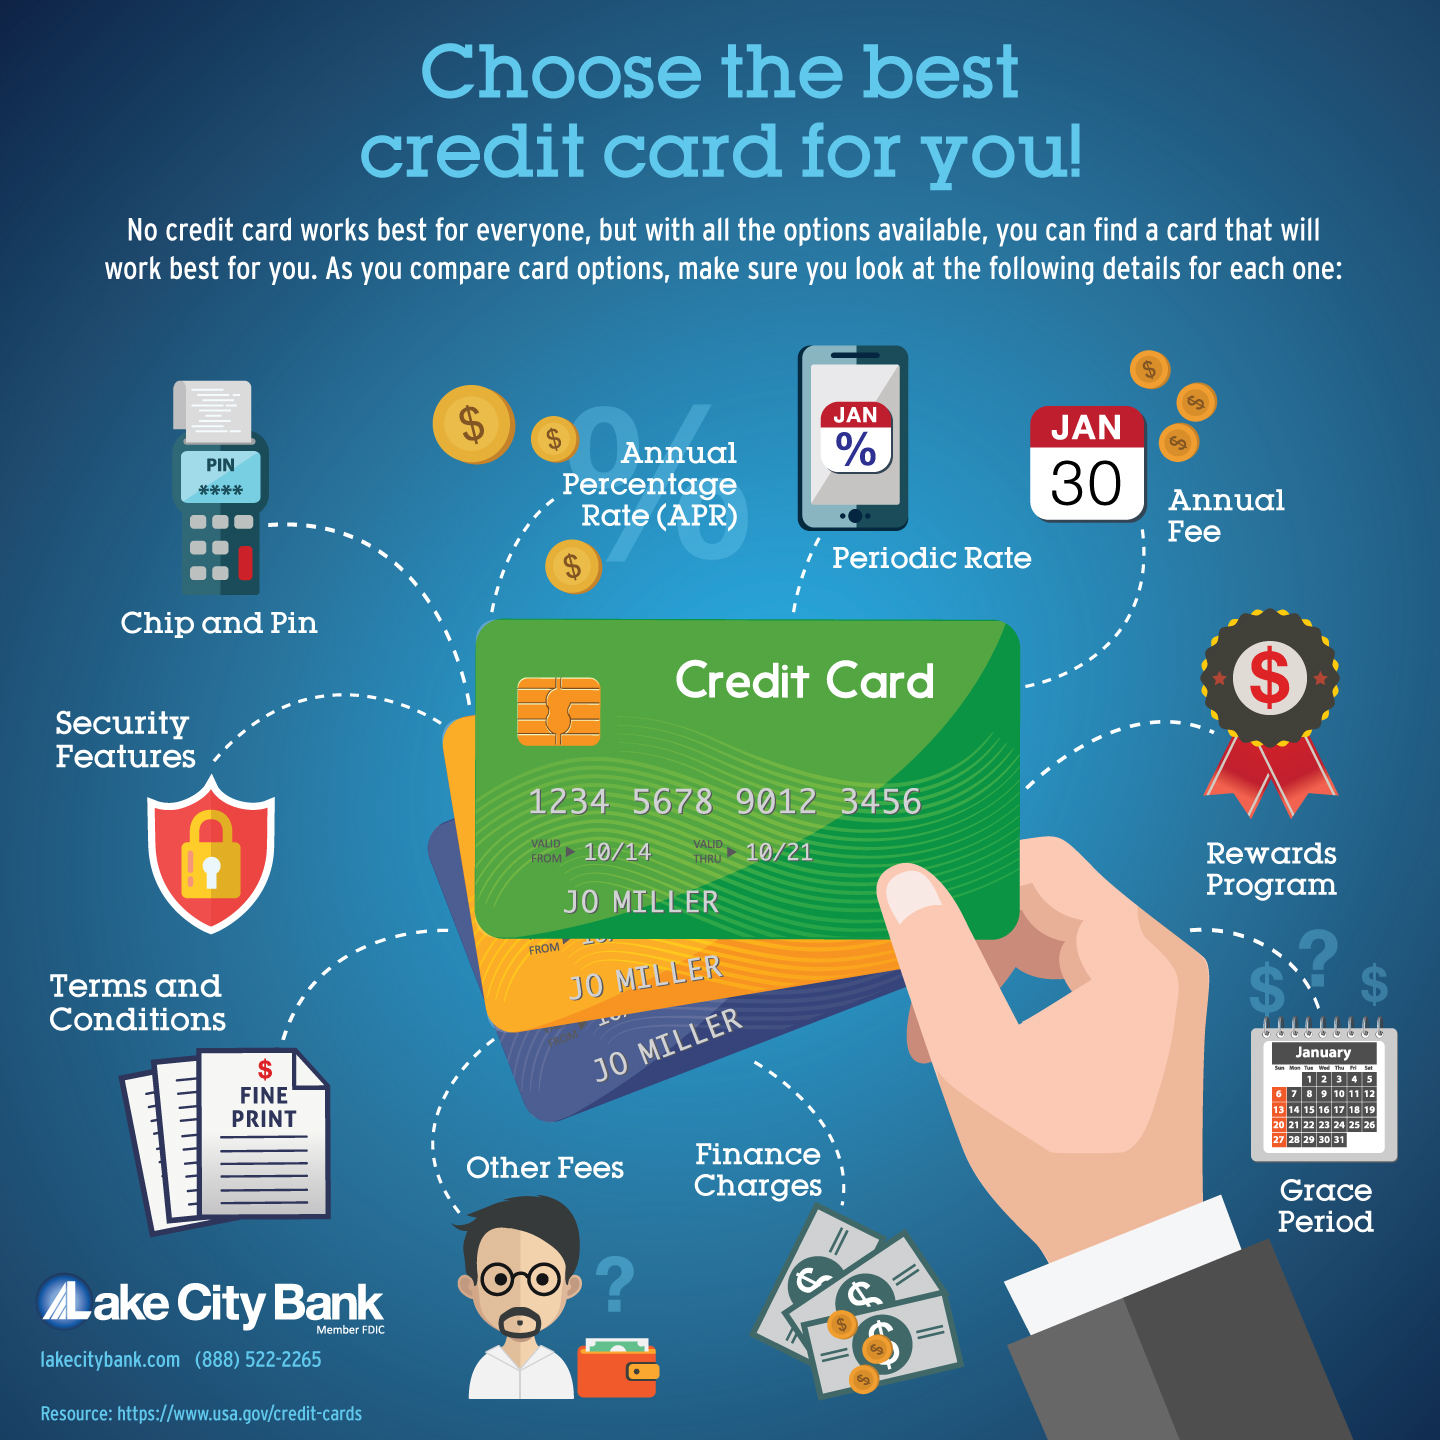 ¿Qué debo buscar al elegir una tarjeta de crédito?